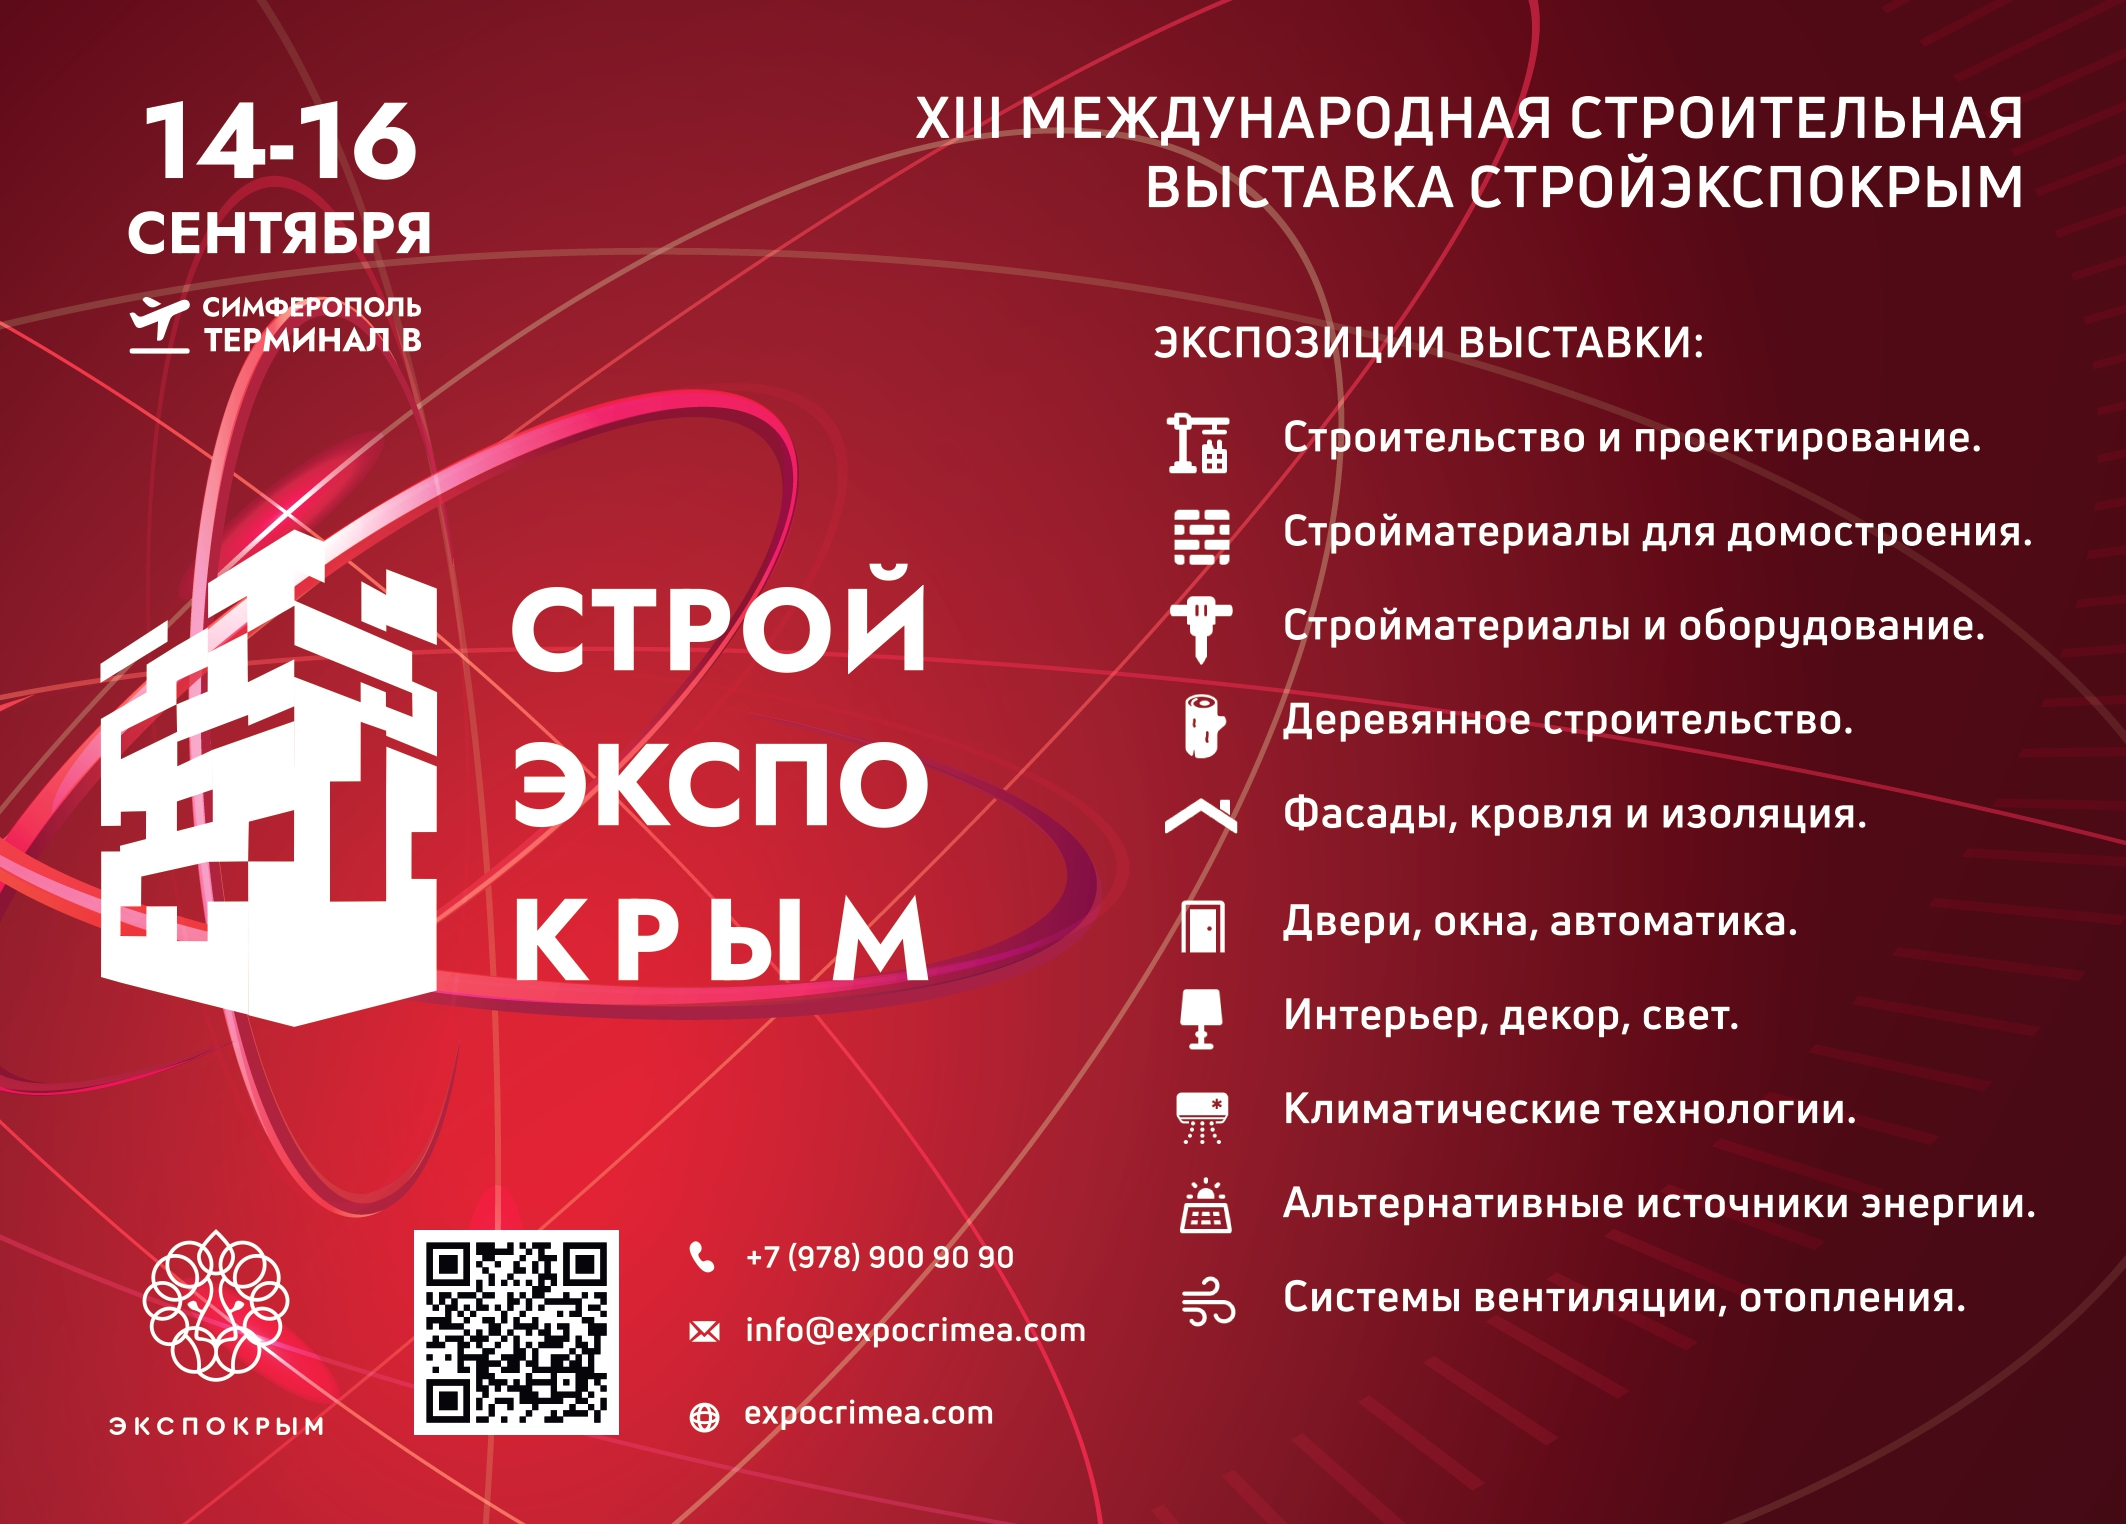 XIII Международная строительная выставка «СТРОЙЭКСПОКРЫМ»